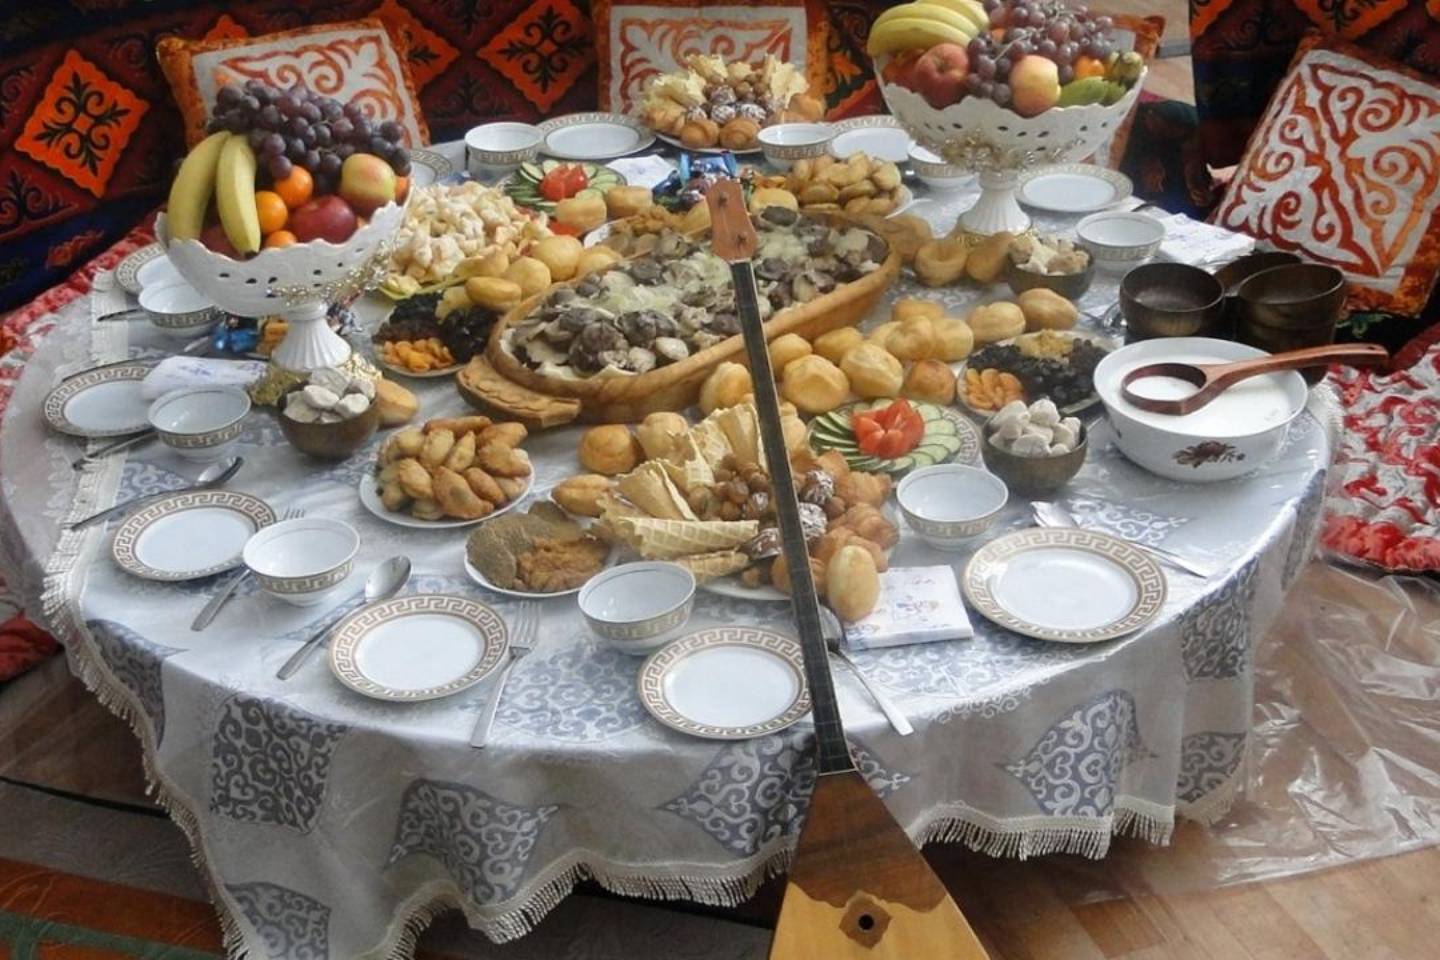 Бешбармак казахский дастархан